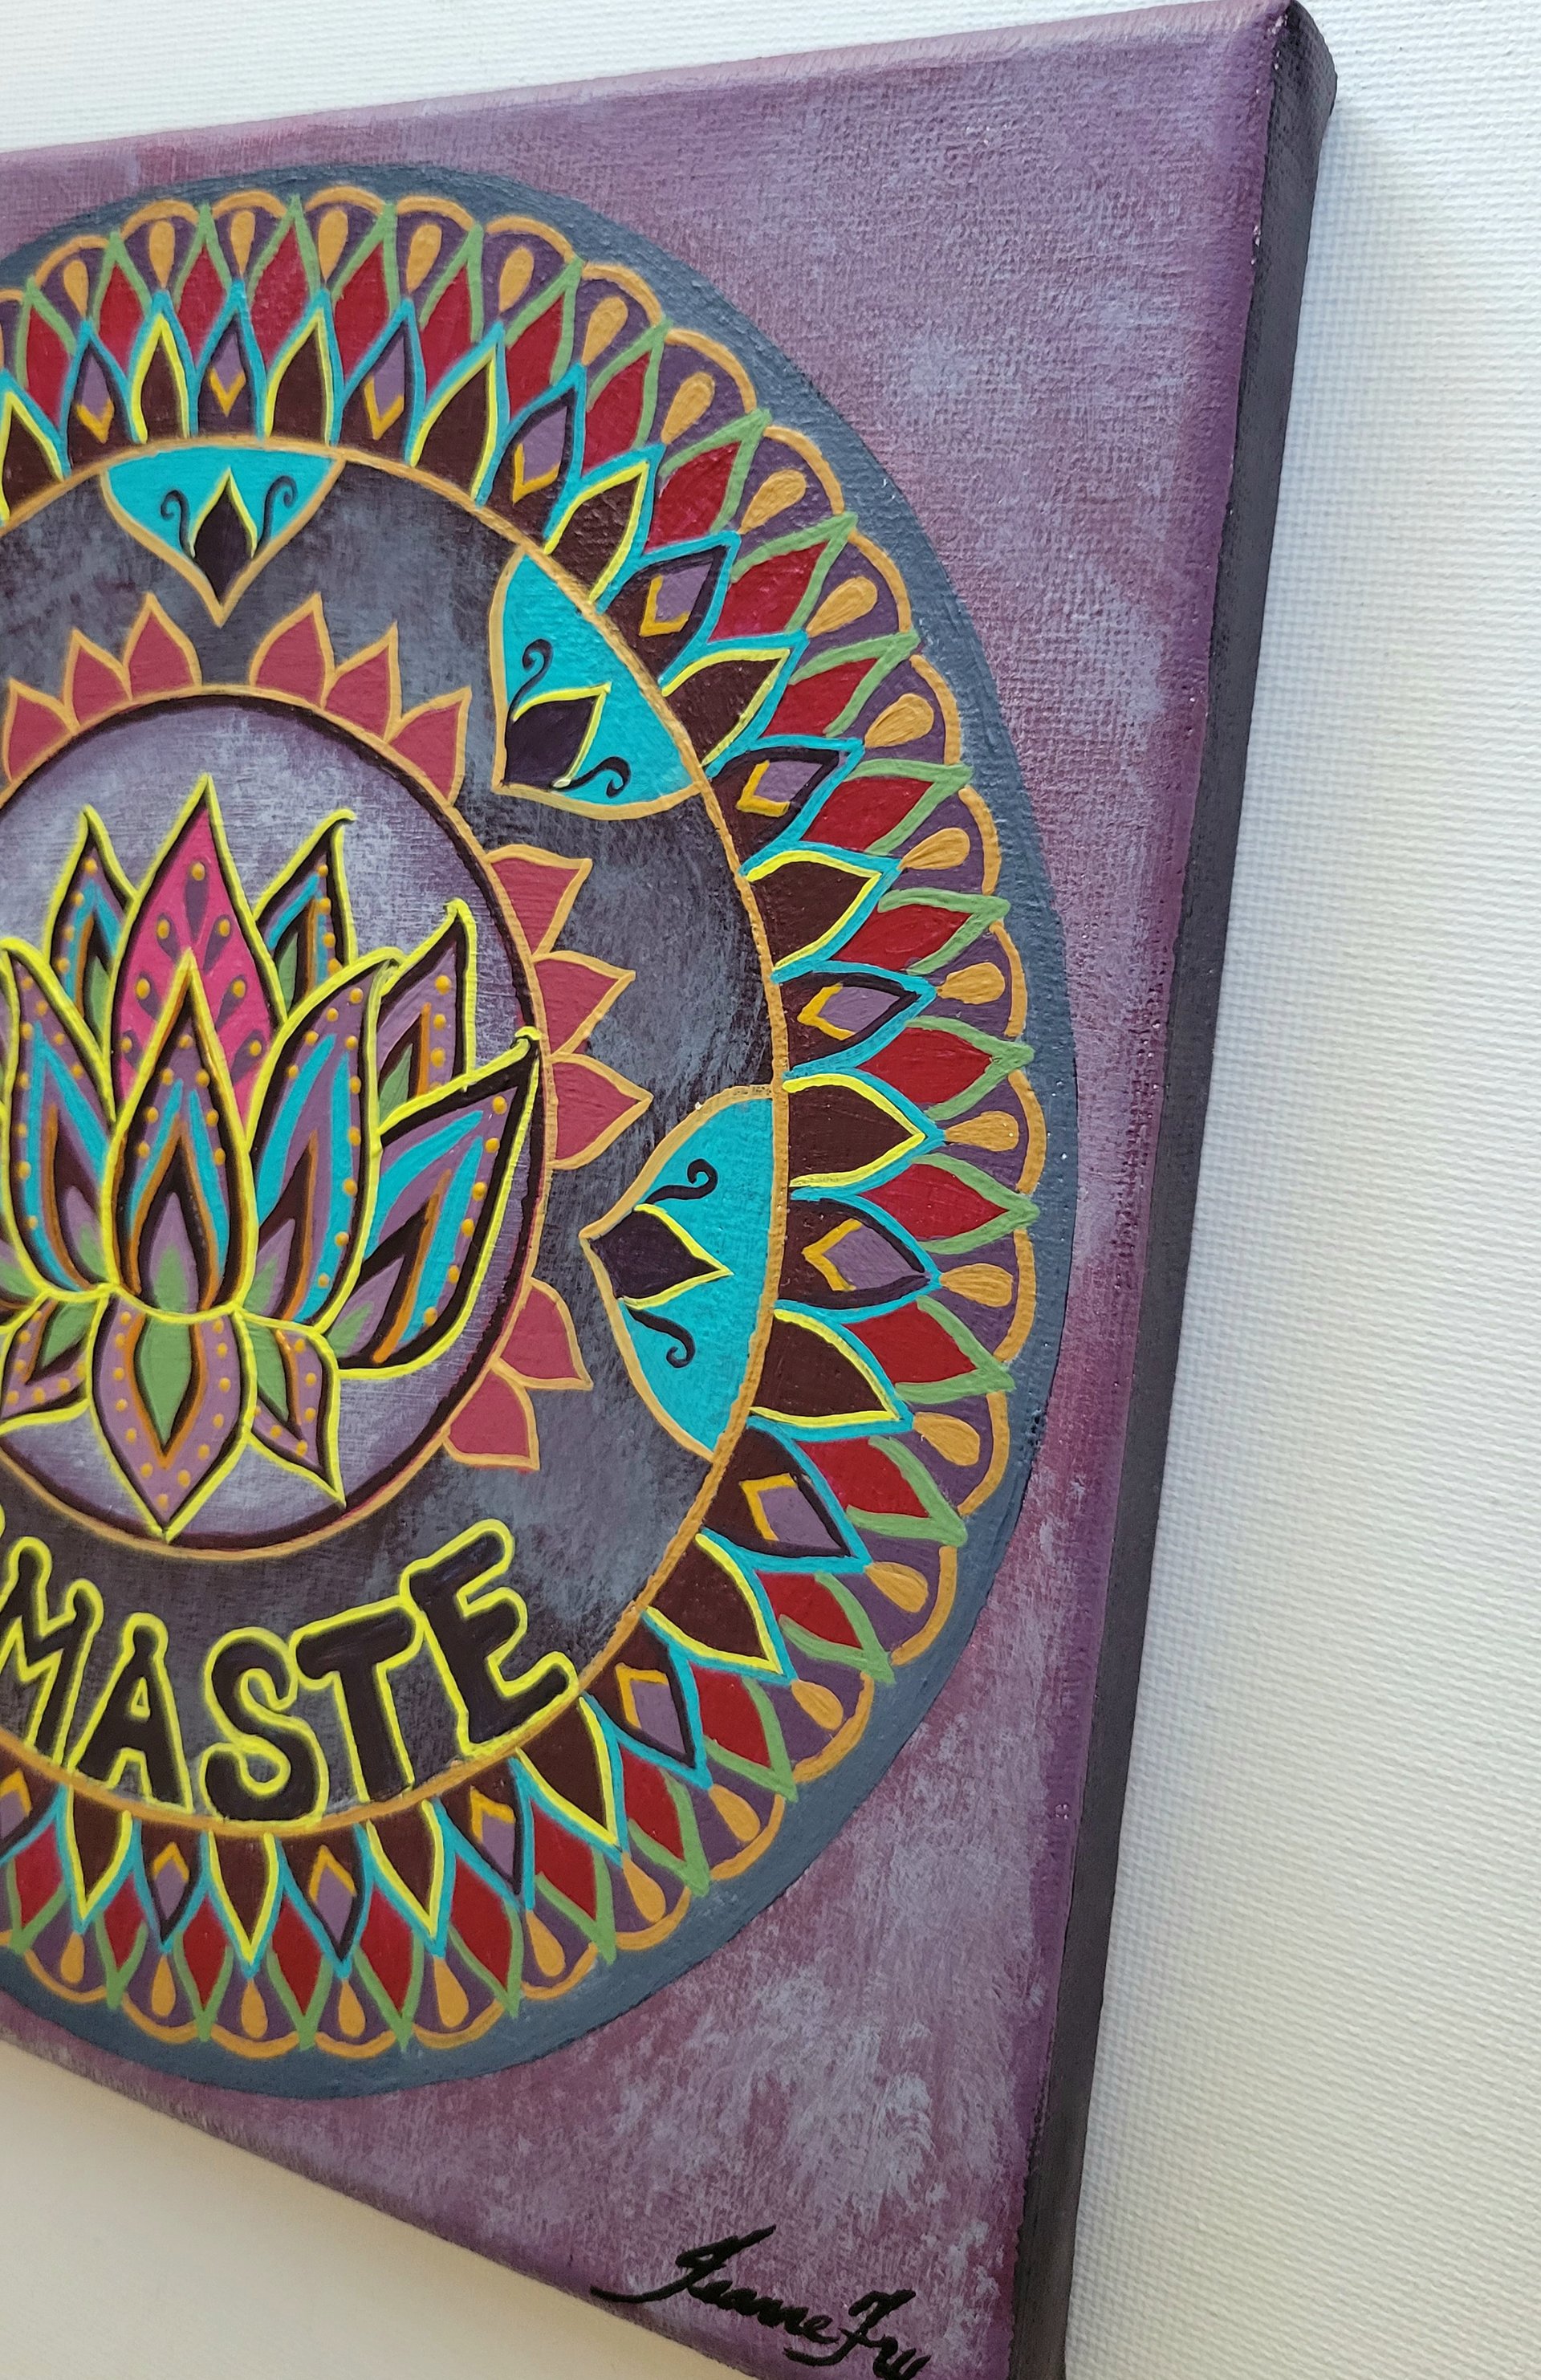 Namaste - Original Mandala Painting on Canvas 8x8